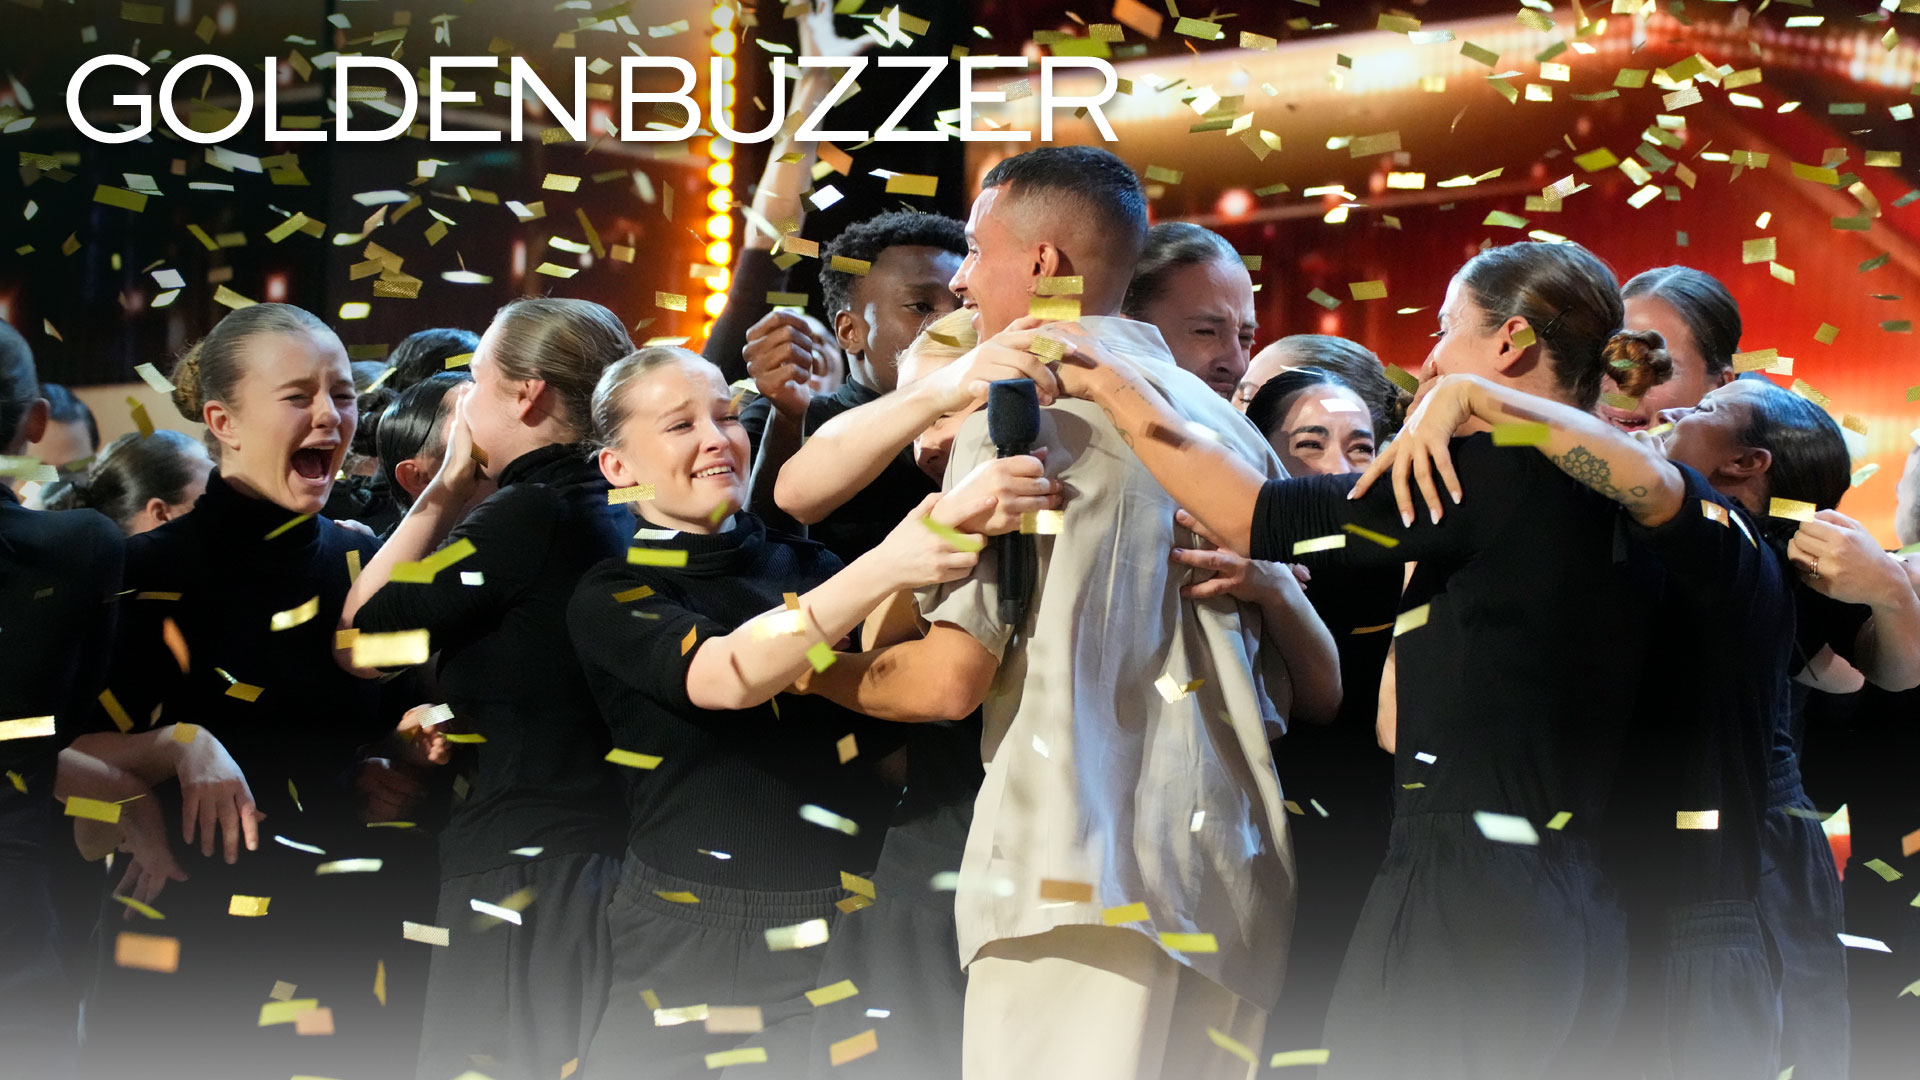 Watch America's Got Talent Highlight Golden Buzzer Murmuration's